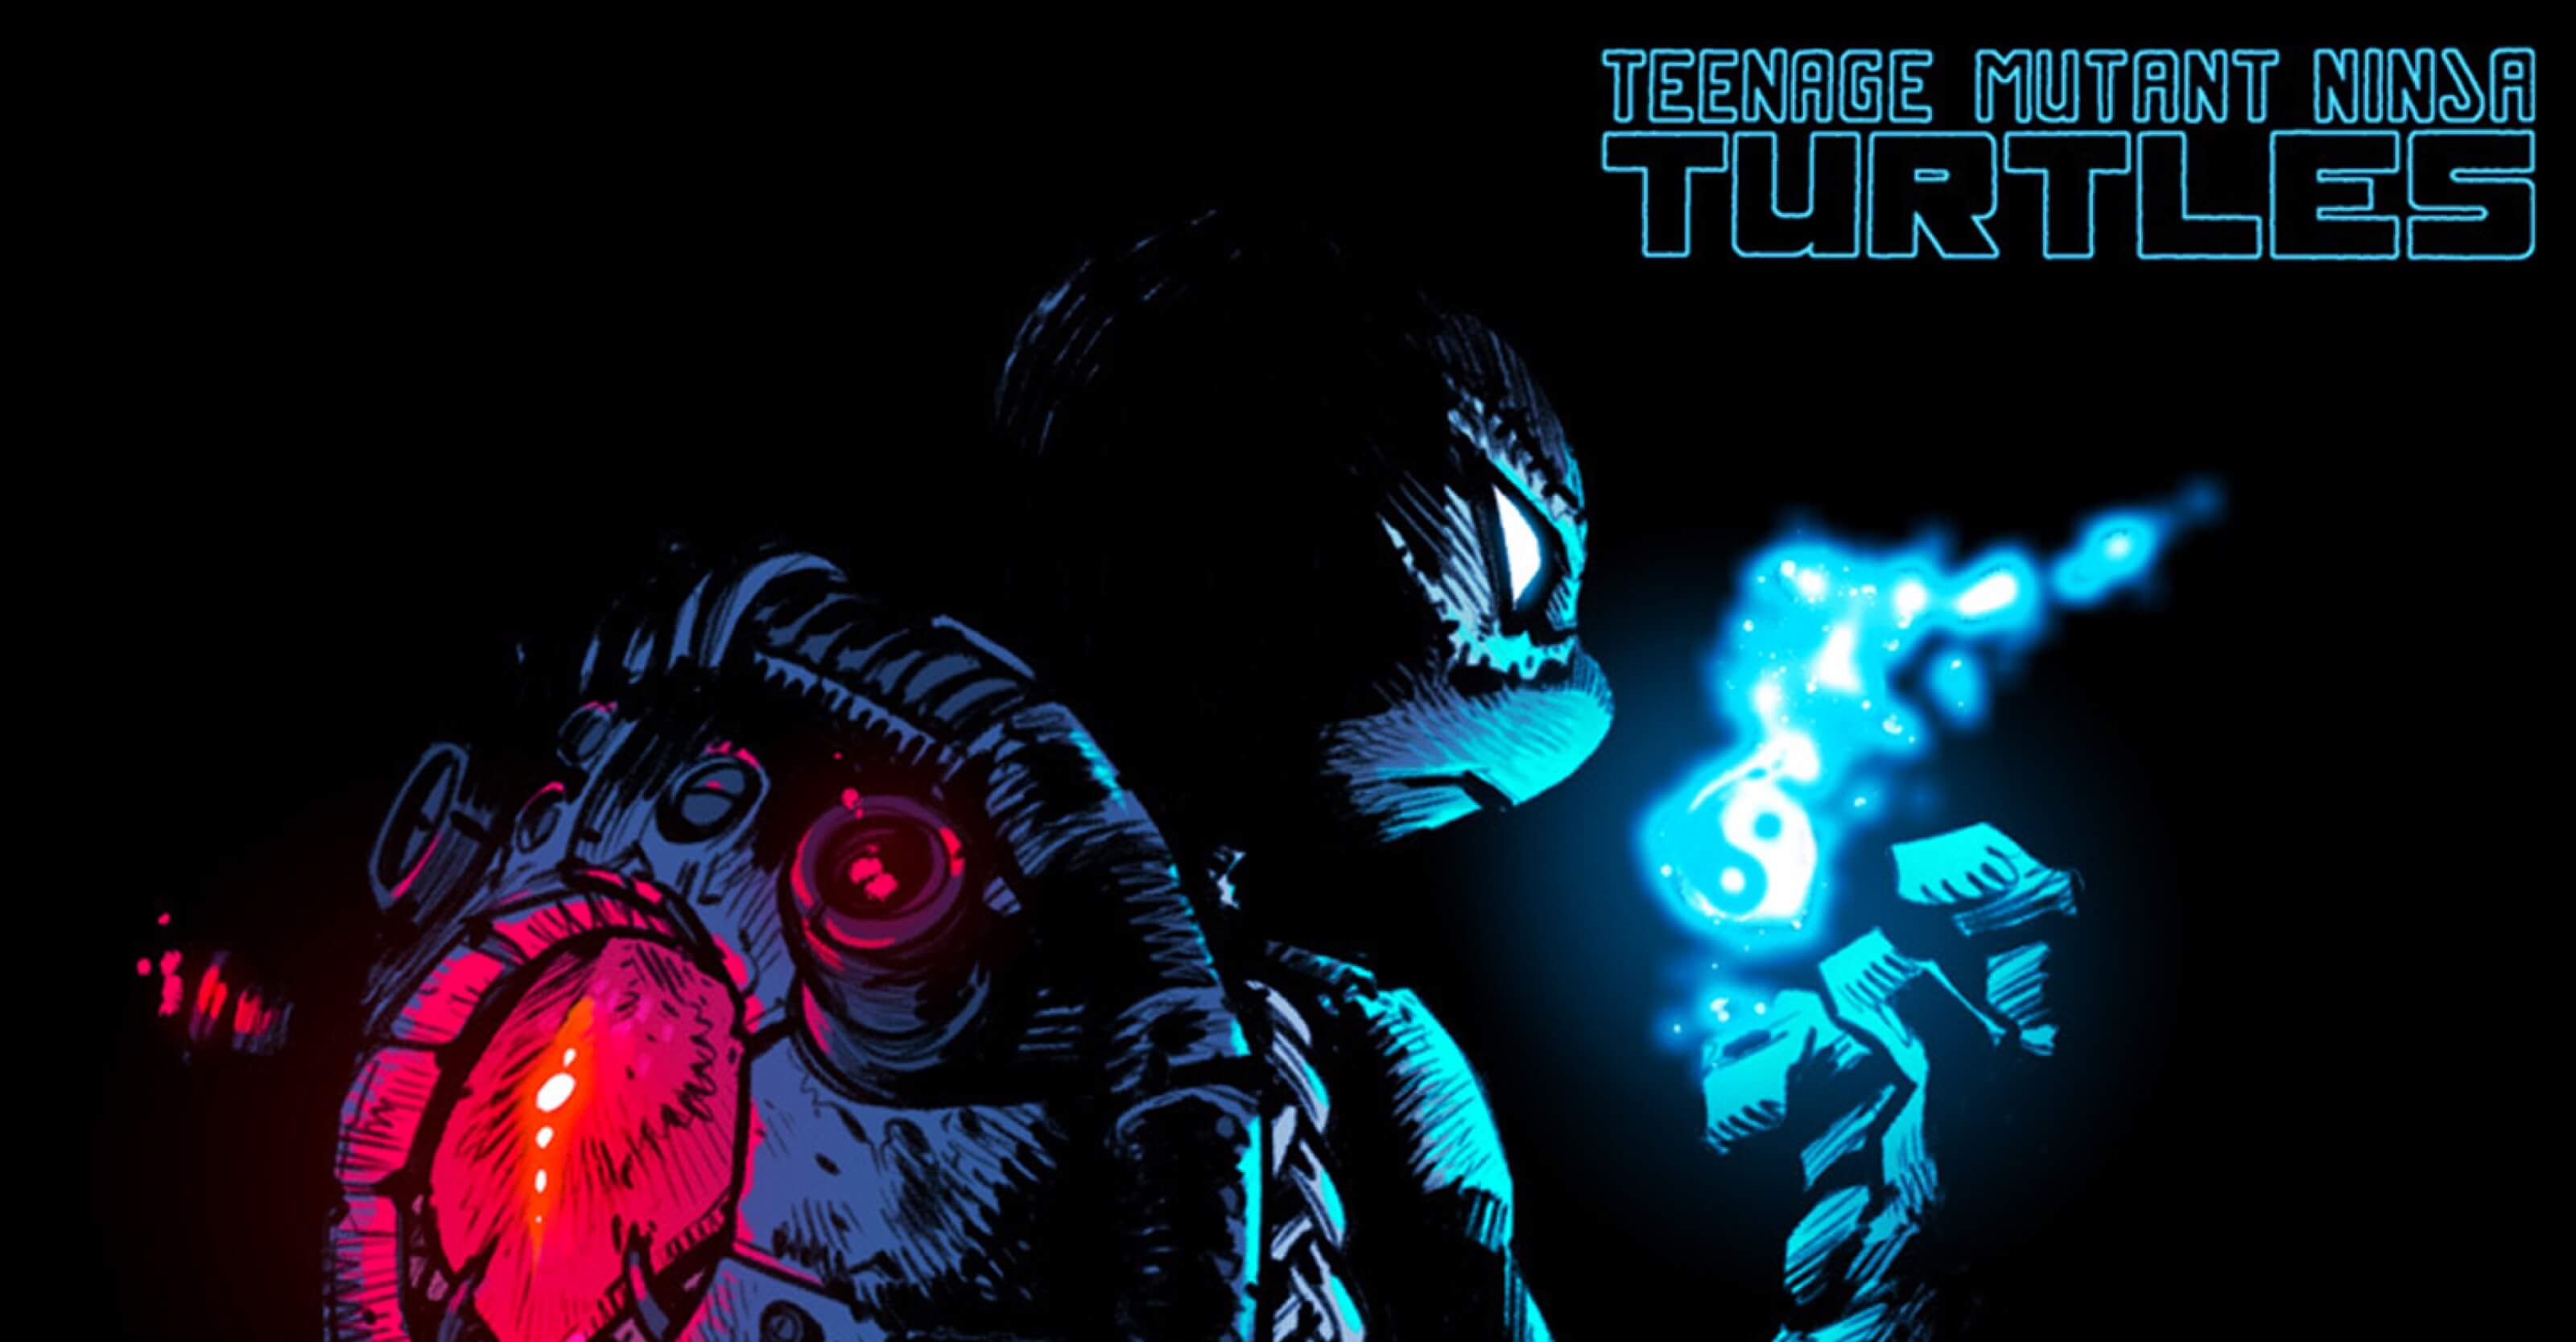 After 24 Years, VENUS RETURNS in IDW's Teenage Mutant Ninja Turtles #127 Comic Book